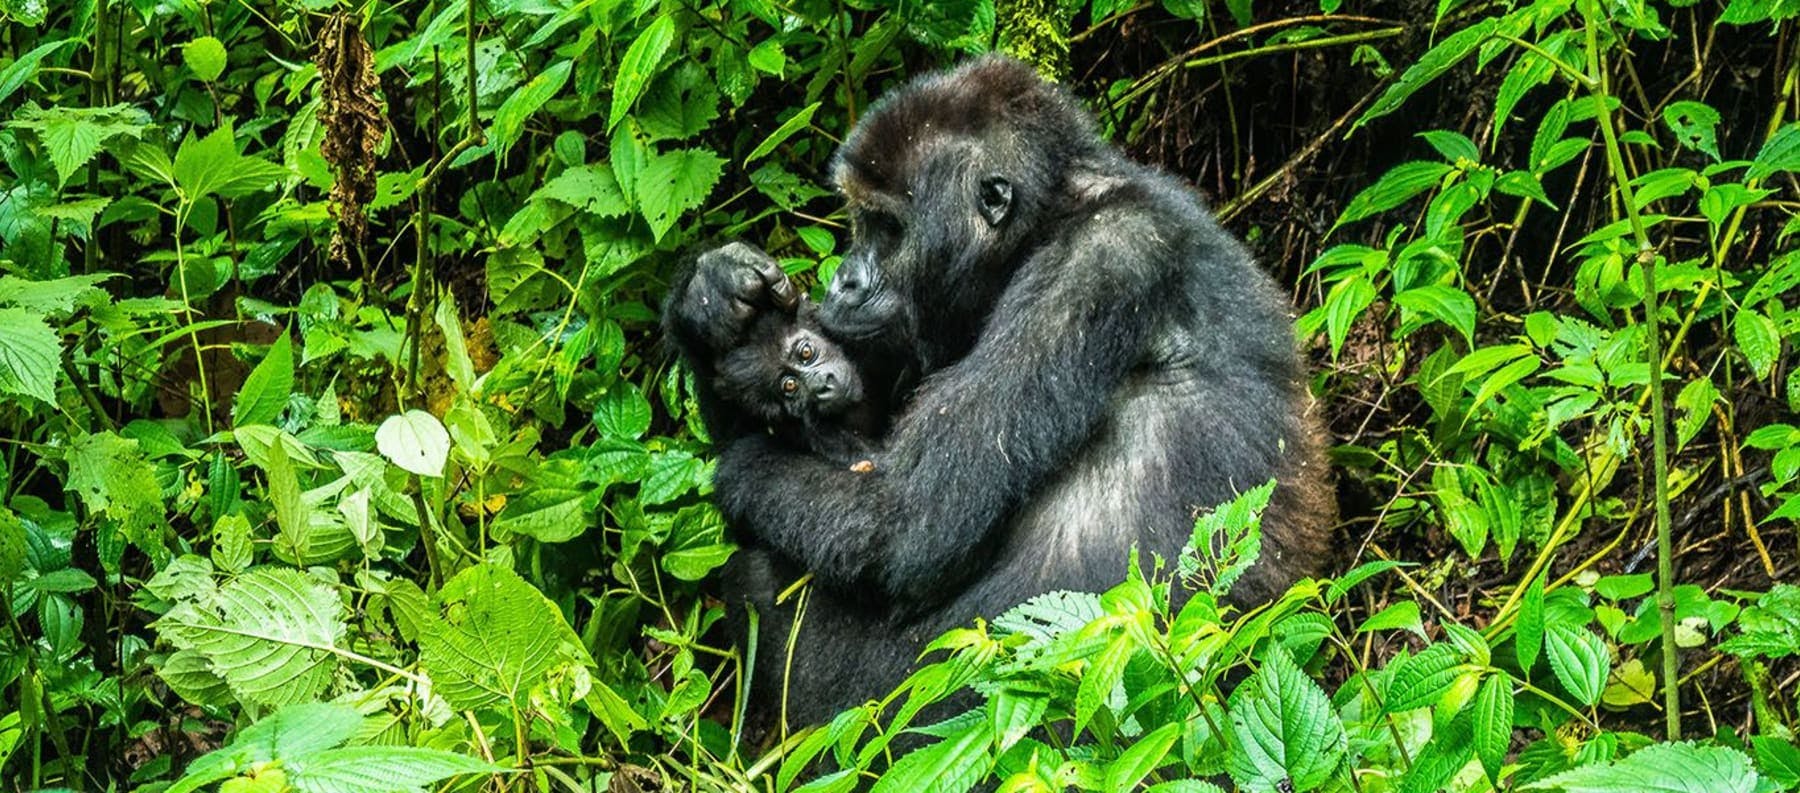 Gorillas in the Jungle in the Congo